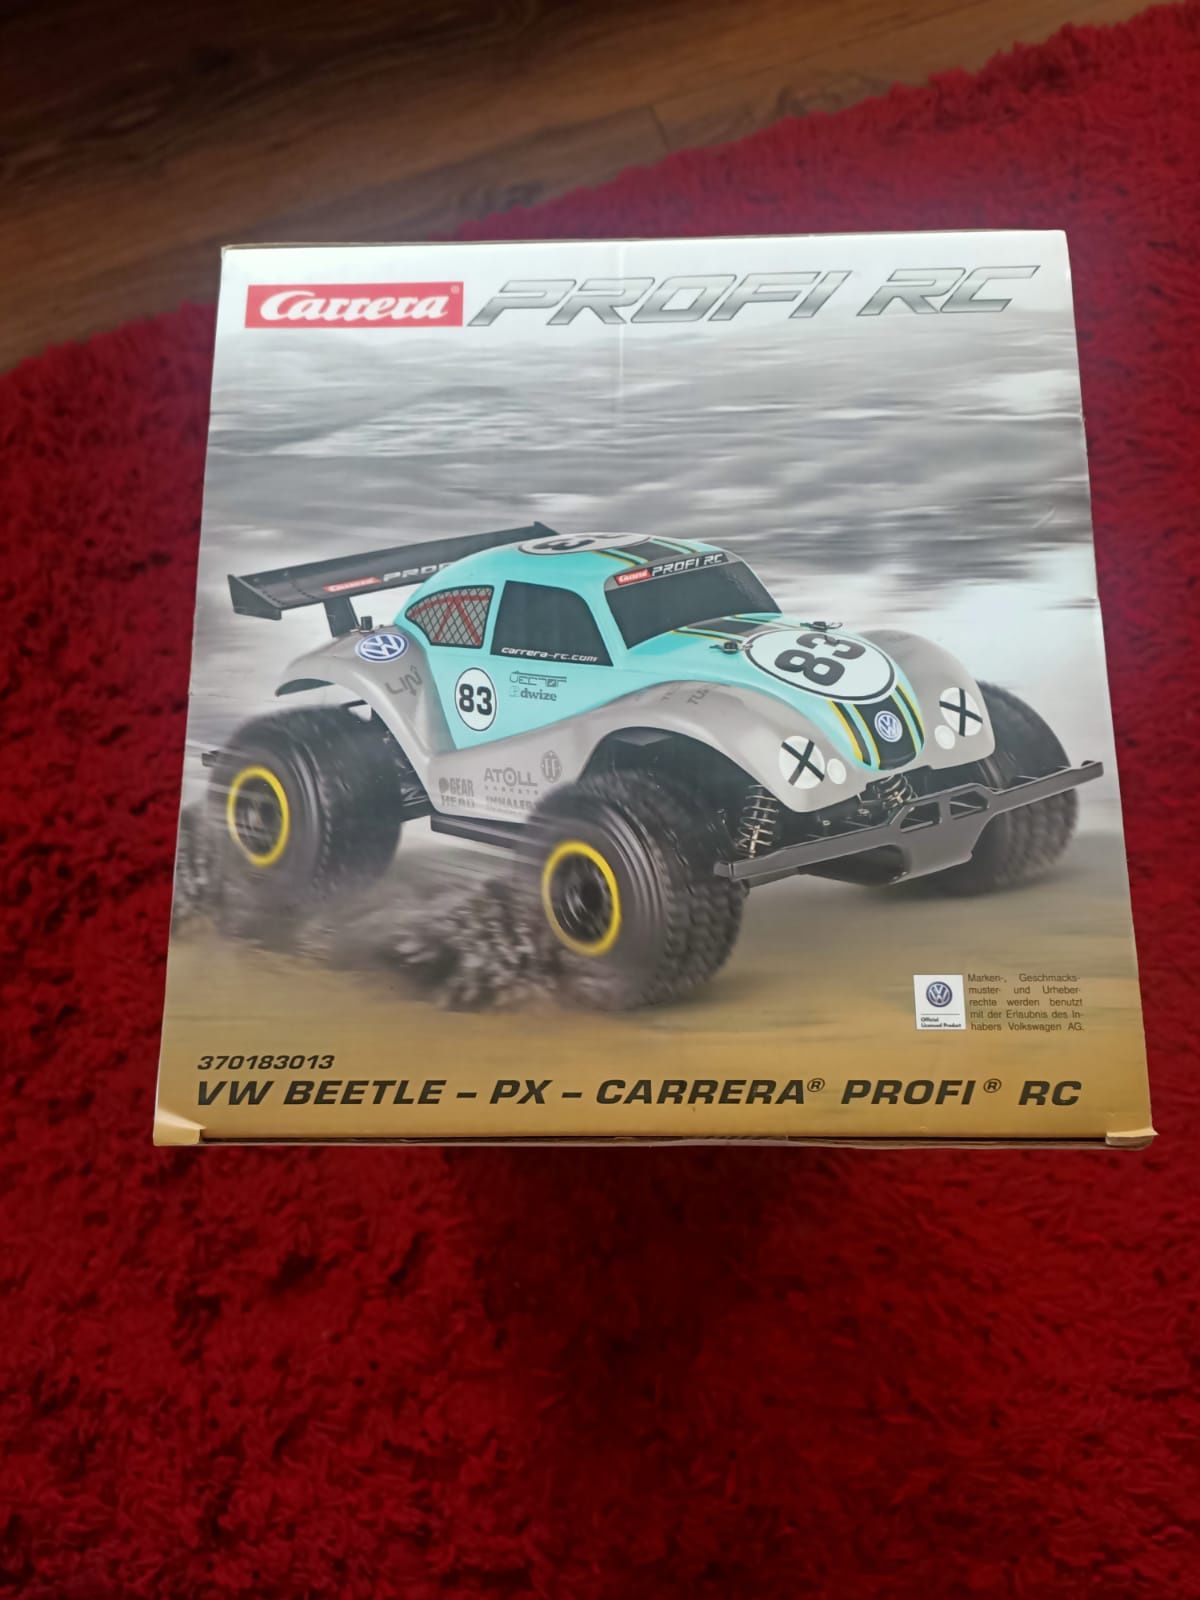 Carrera RC Profi - VW Beetle -PX- 2.4GHz 1:18